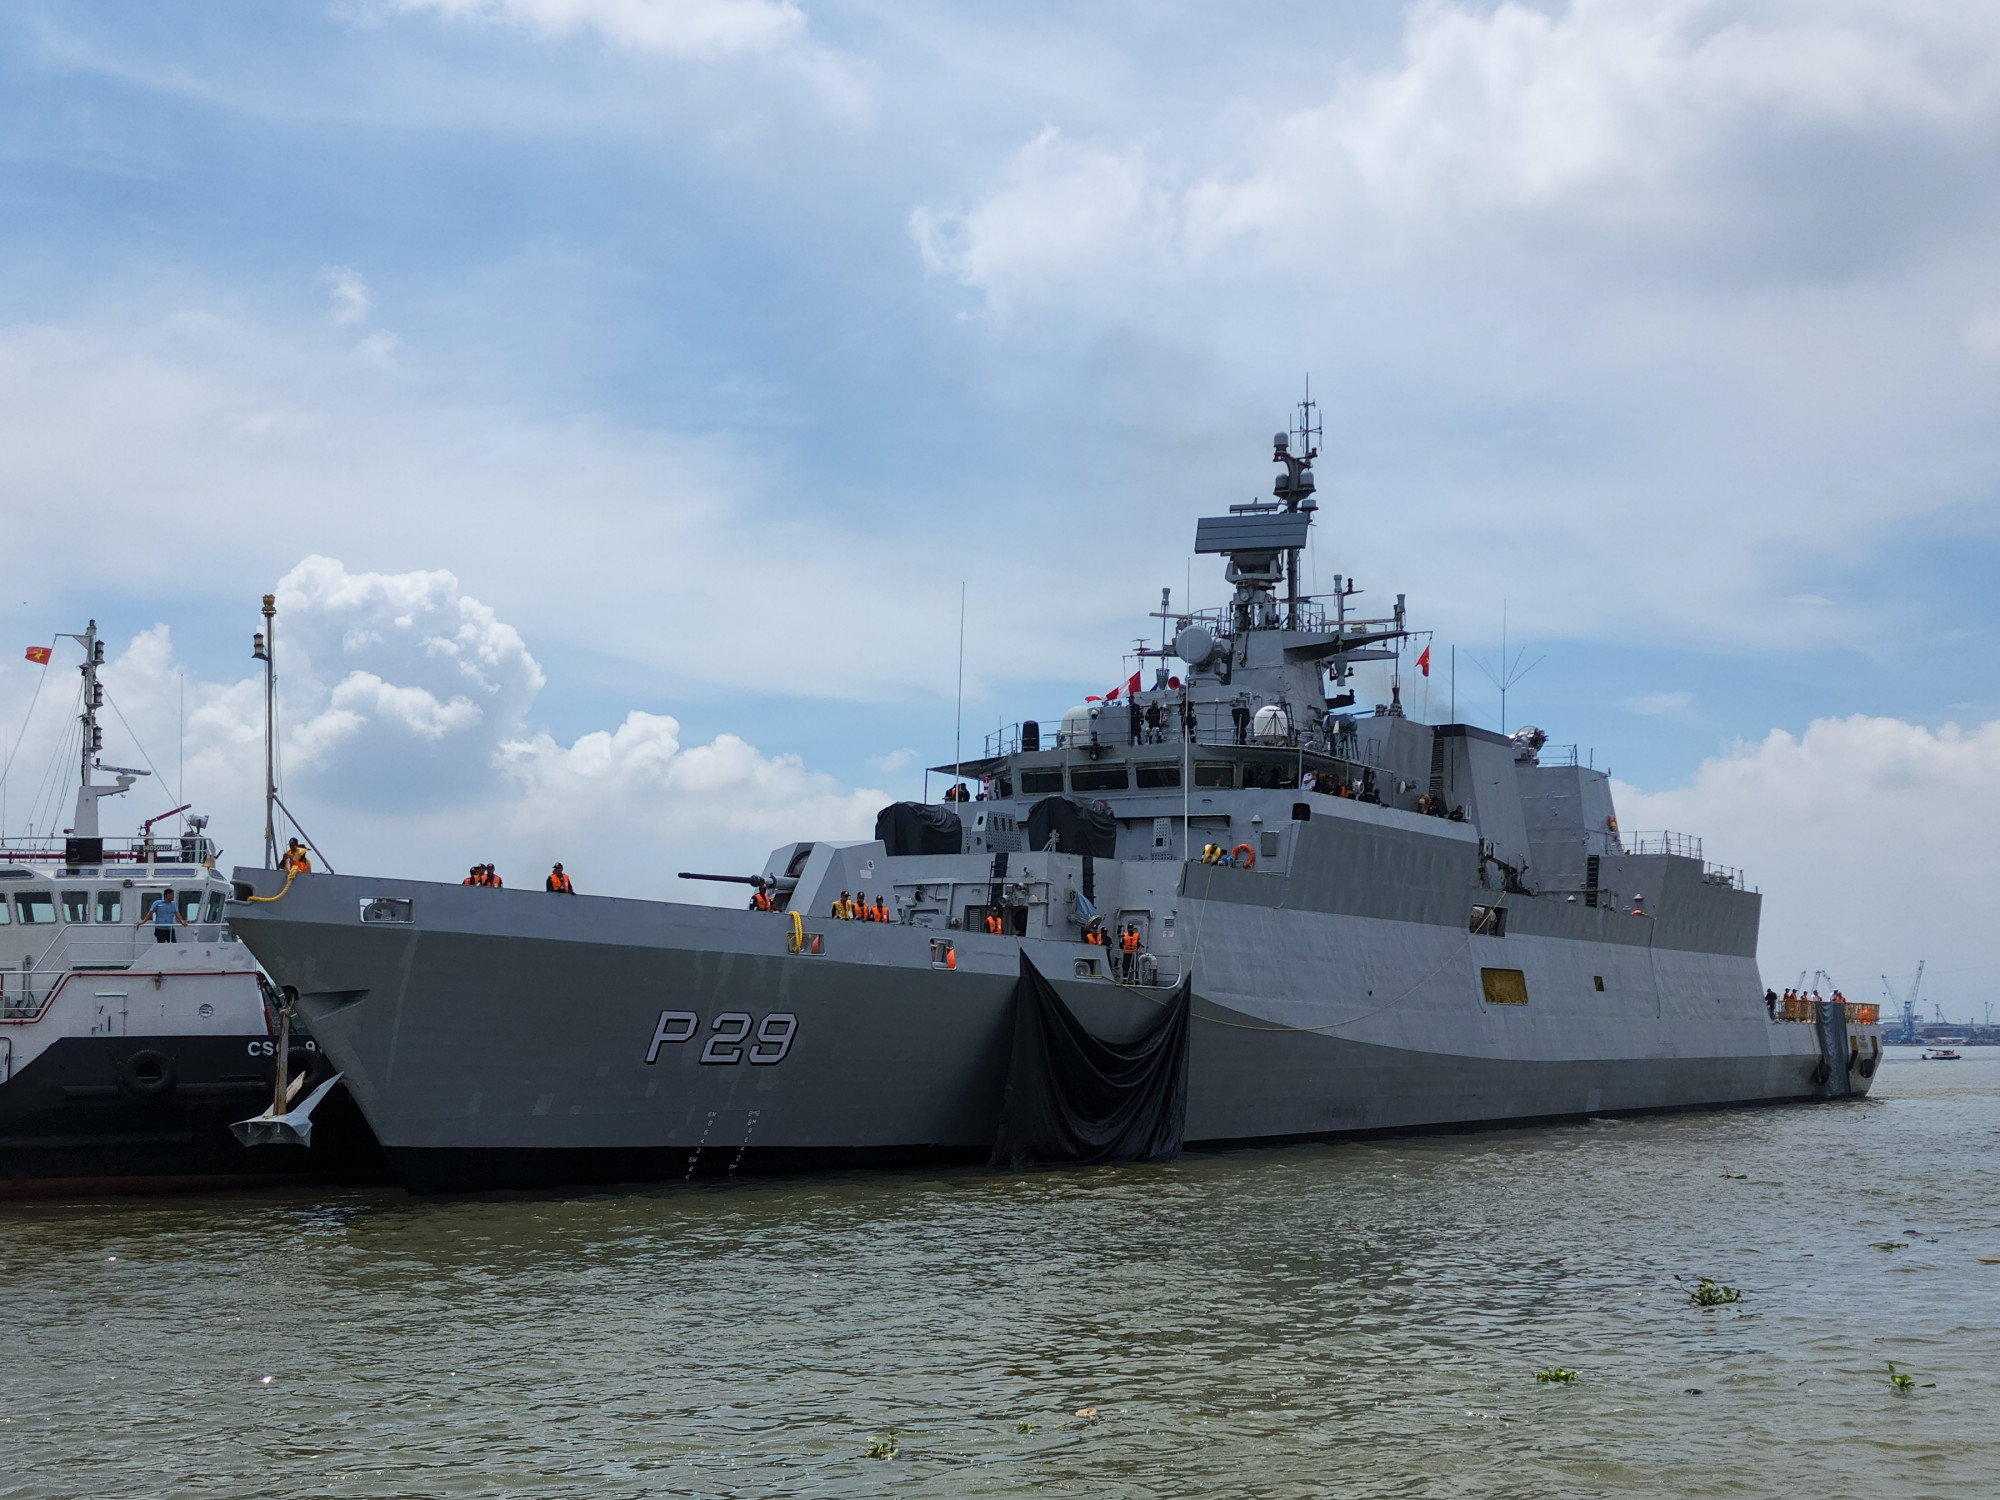 Tàu INS KADMATT (P 29) thuộc Hạm đội hướng Đông của hải quân Ấn Độ. Cả hai tàu INS SAHYADRI và INS KADMATT  đều được đóng tại Ấn Độ, thể hiện khả năng quân sự mạnh mẽ của quốc gia Nam Á